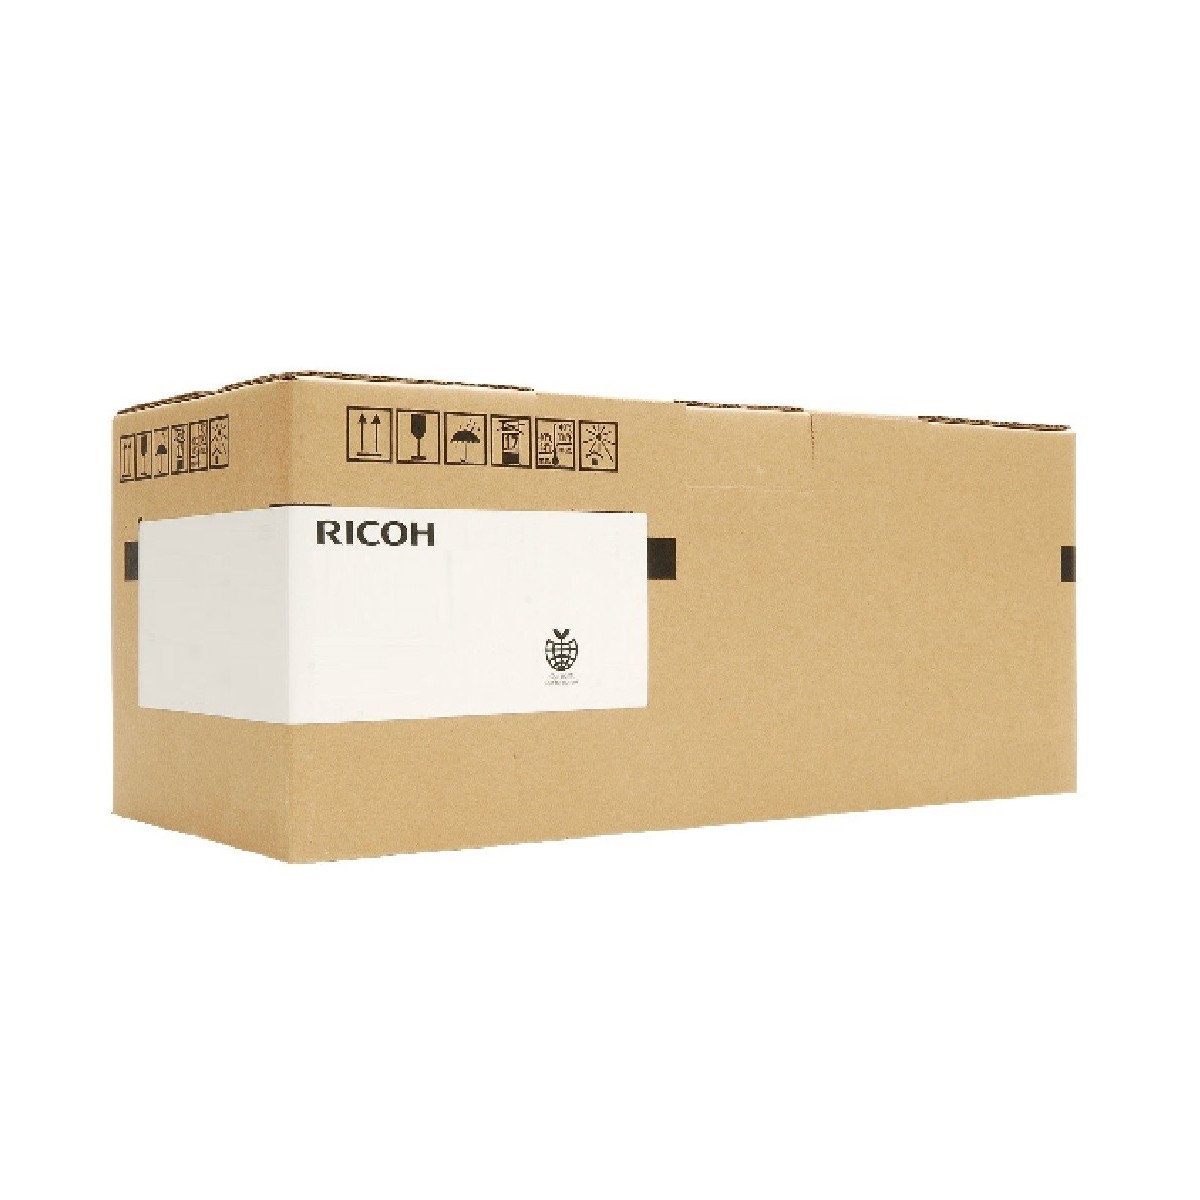 Ricoh B2472010 - 1 pc(s) - Maintenance Kit